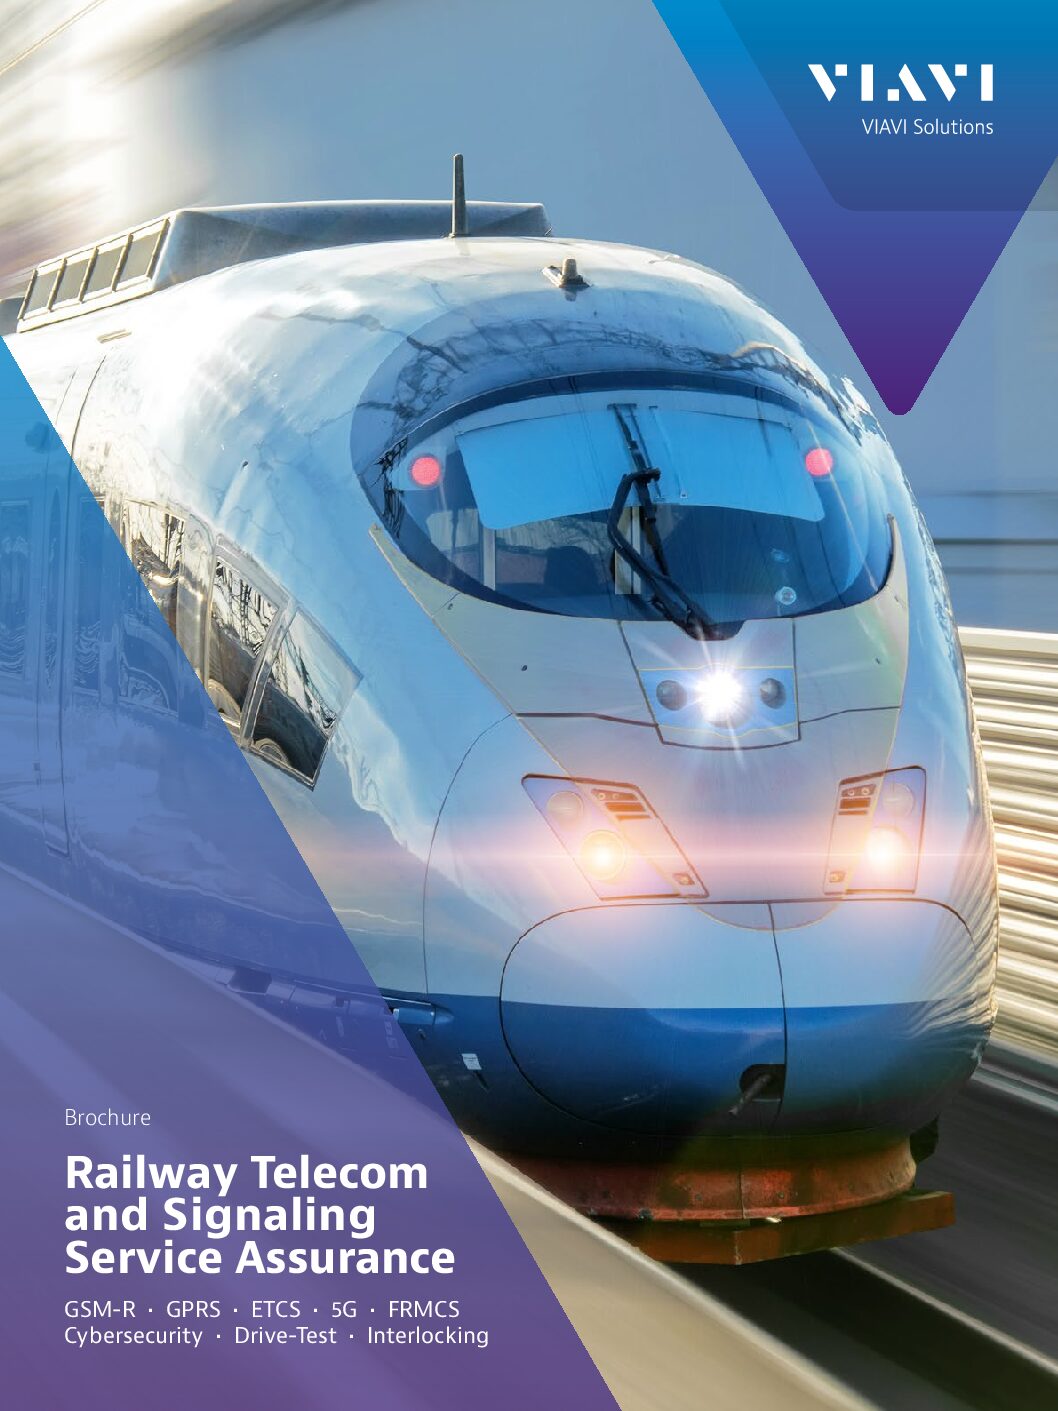 VIAVI: Railway Telecom and Signaling Service Assurance